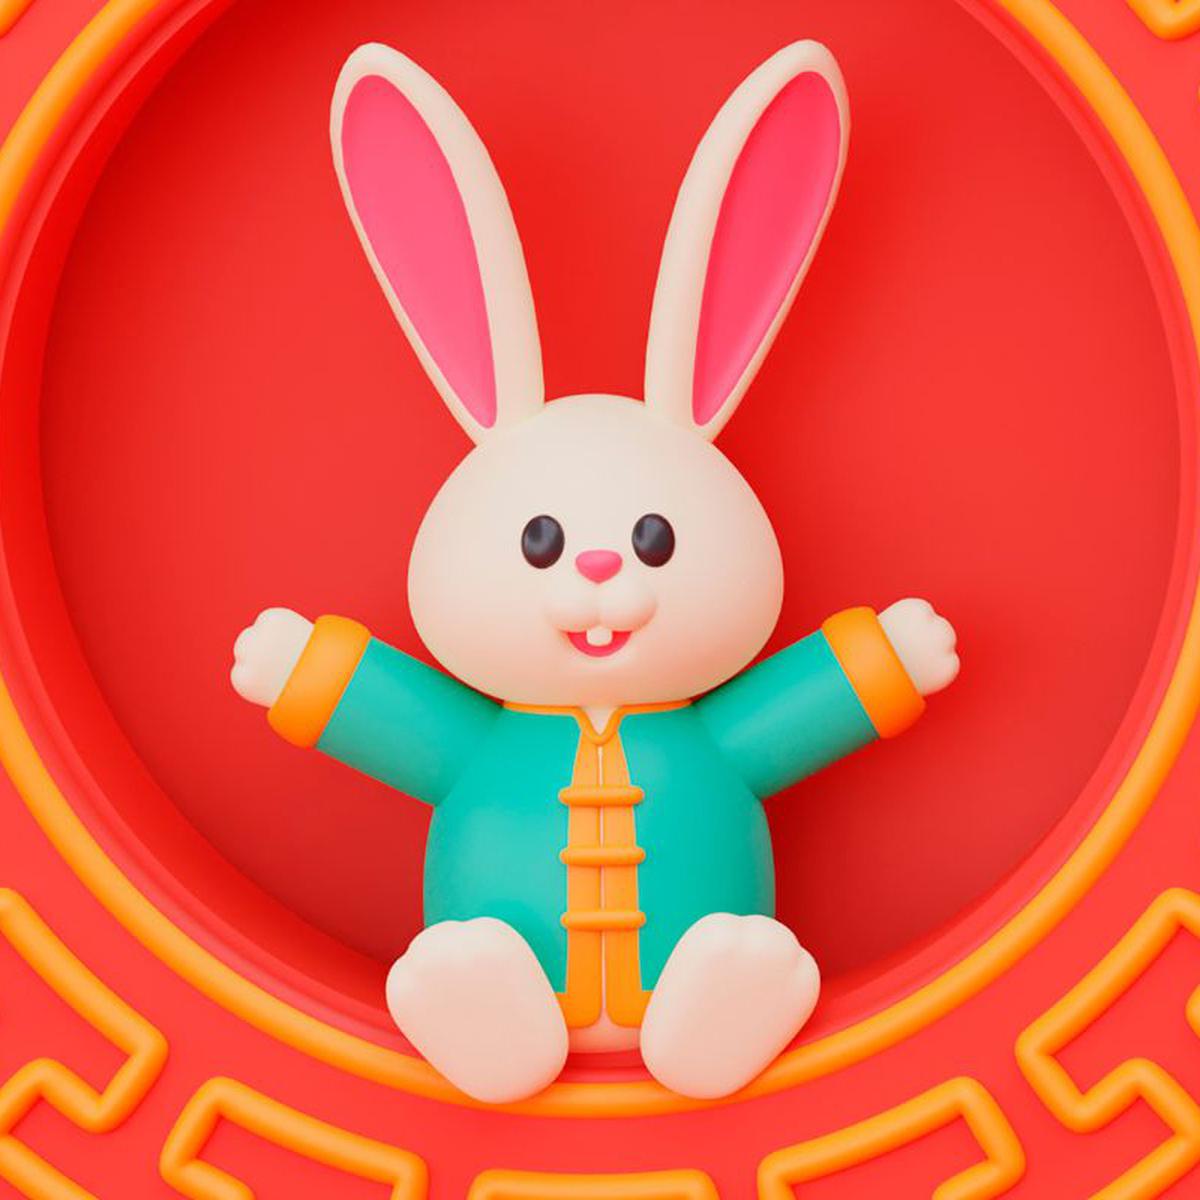 Año Nuevo Chino del Conejo 2023: Qué significa, rituales y cuáles